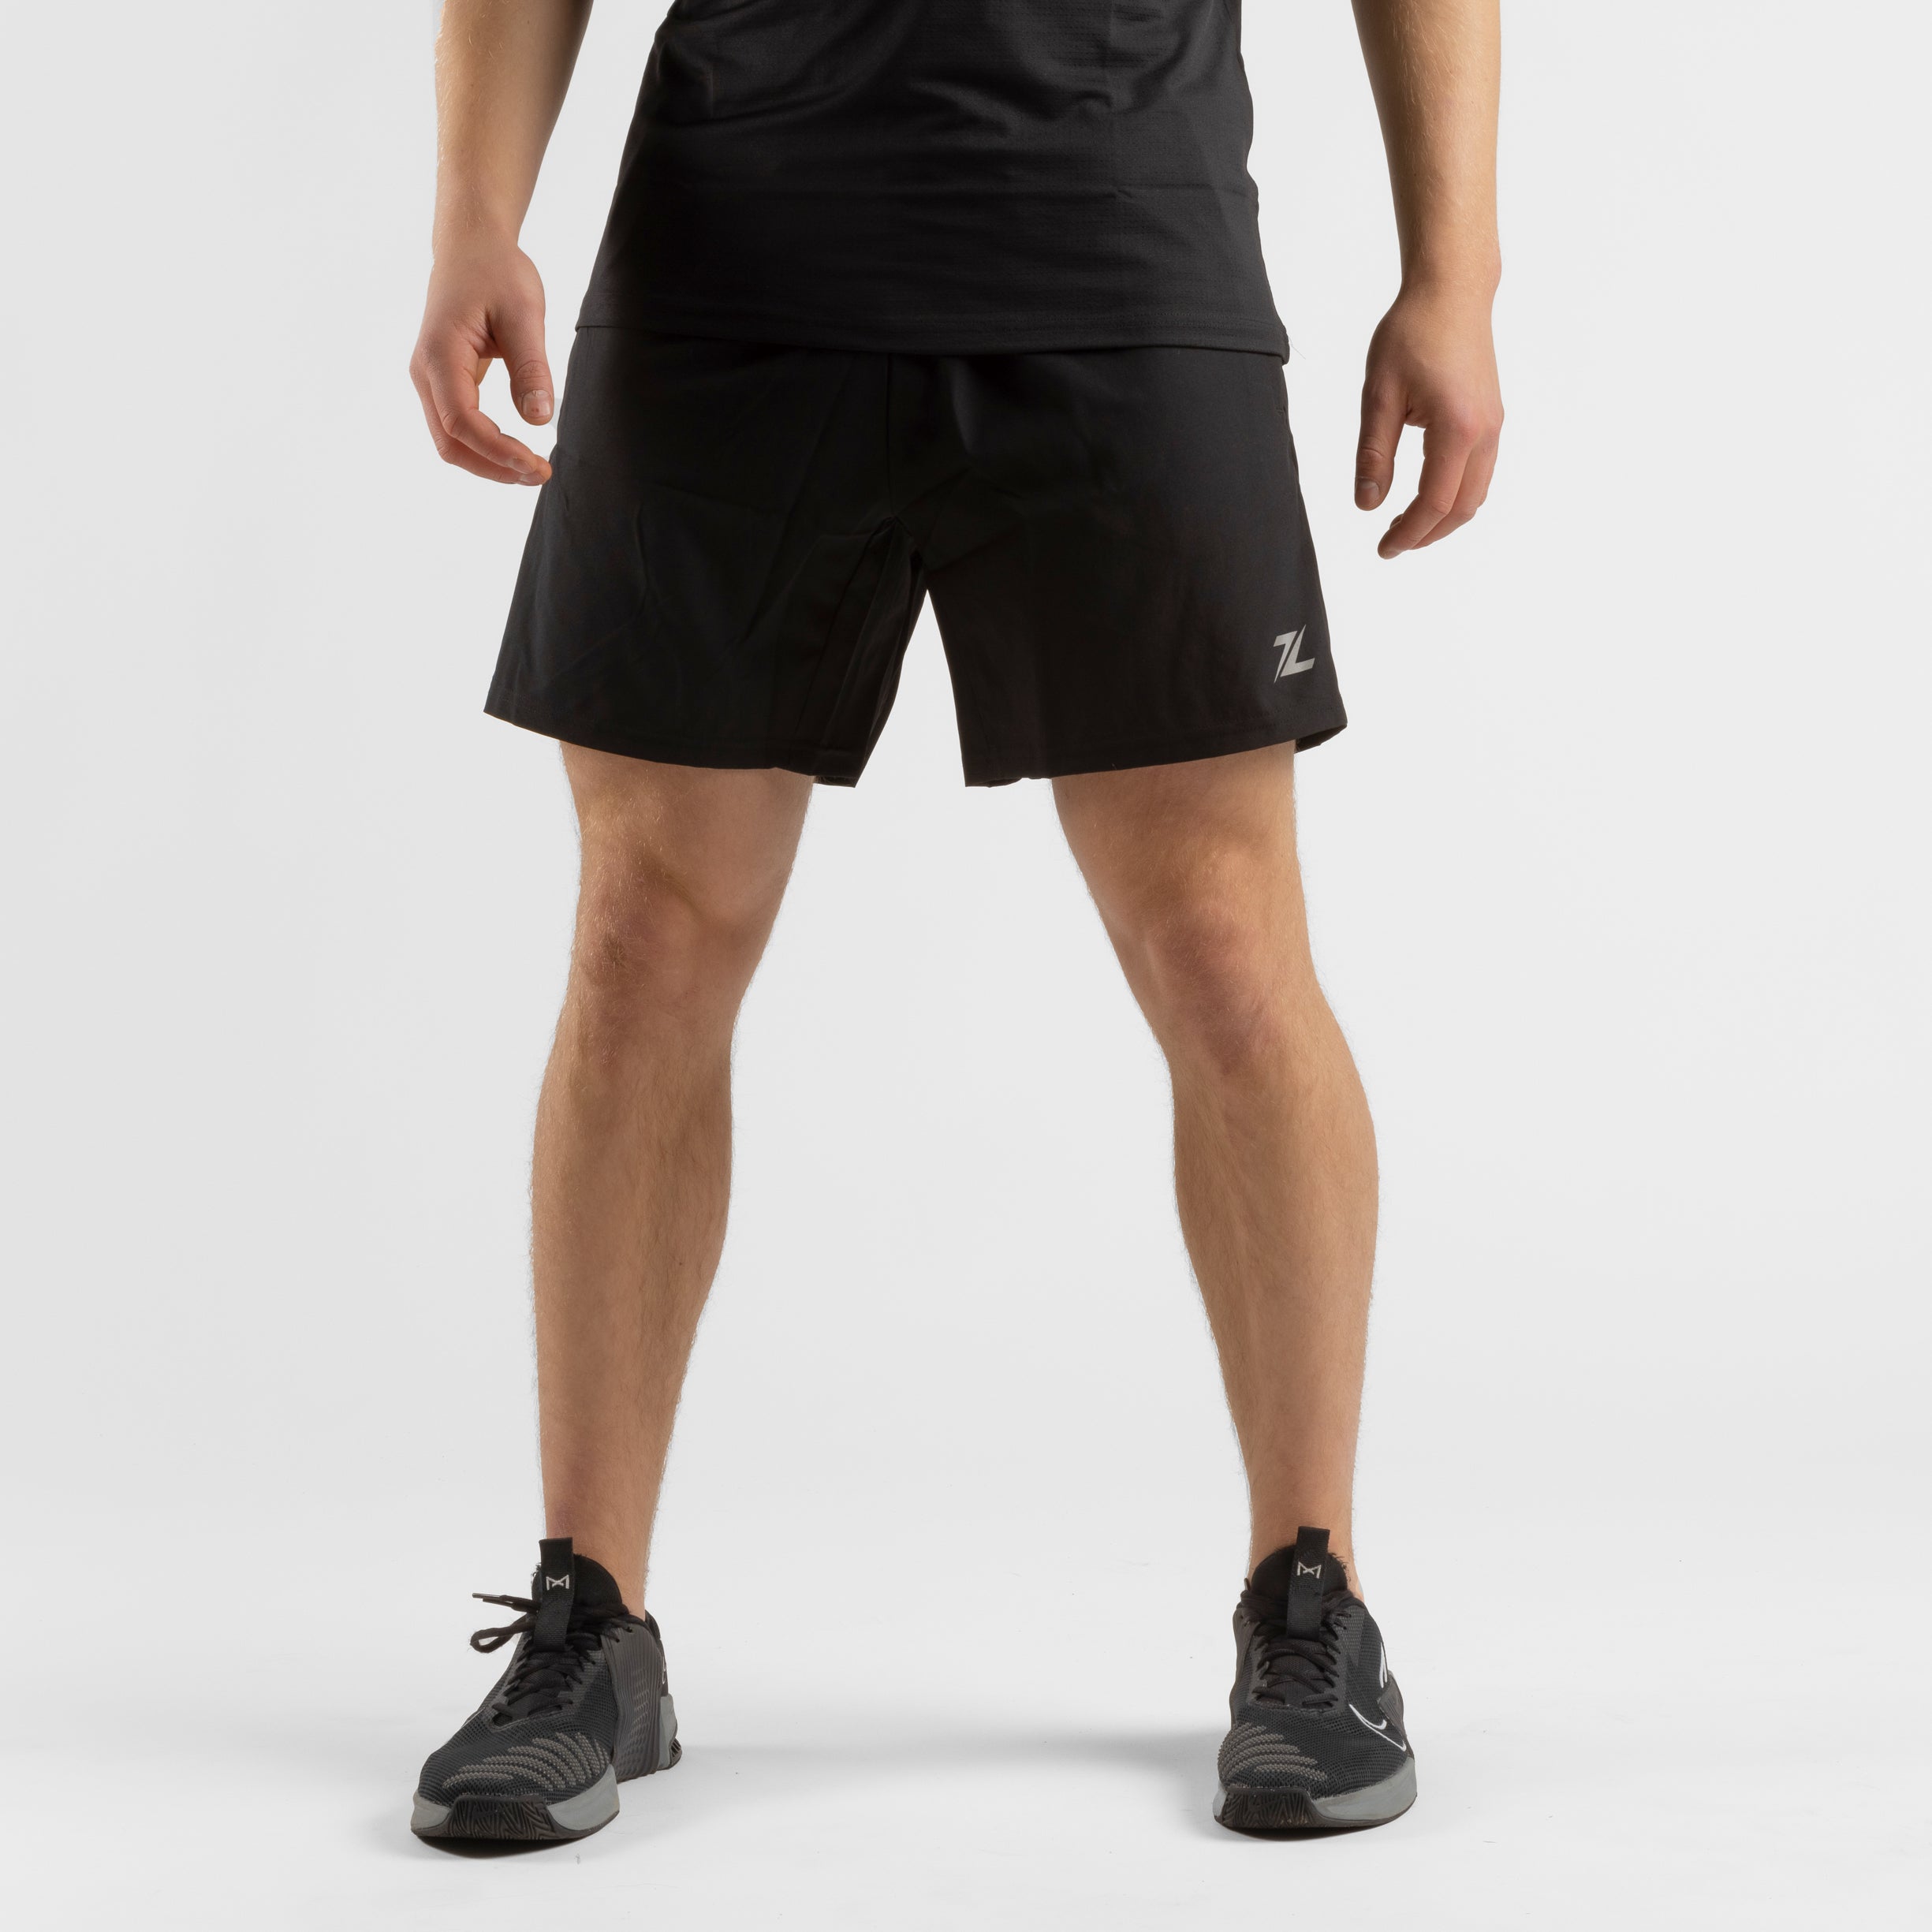 ZEUZ Sport Shorts - Hosen